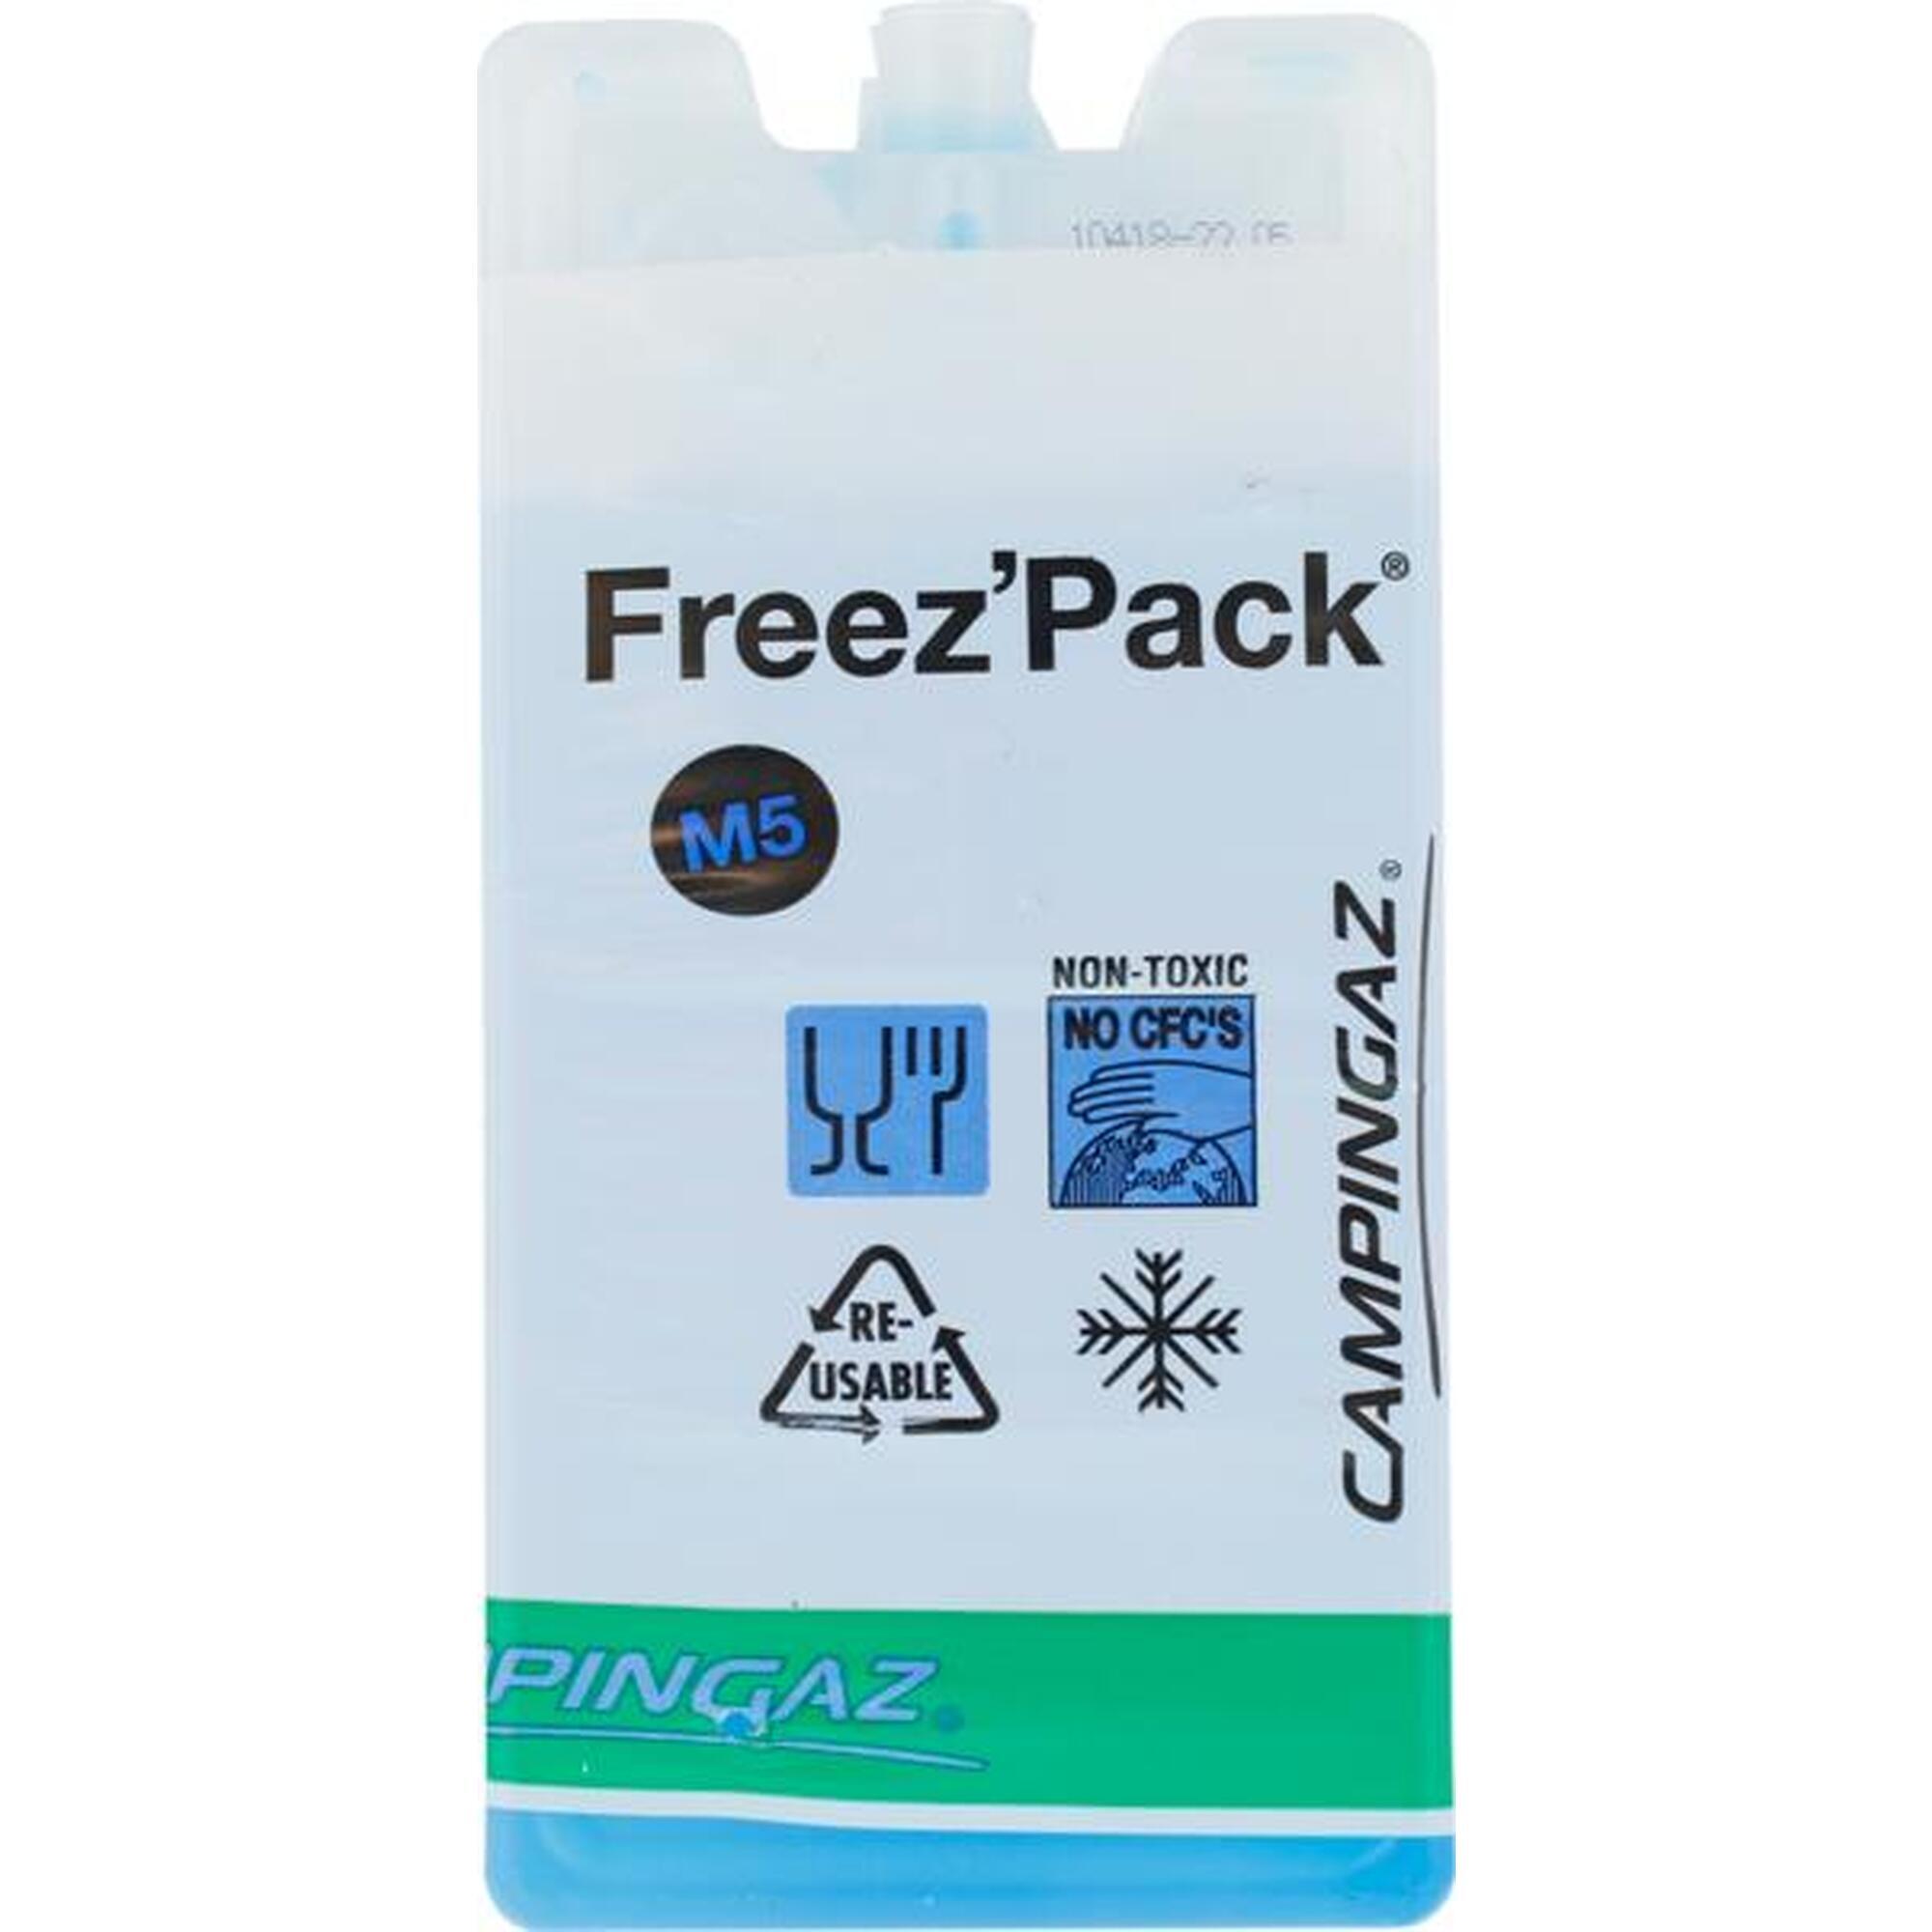 Campingaz Freez Pack M5 hűtőbetét 2 db.